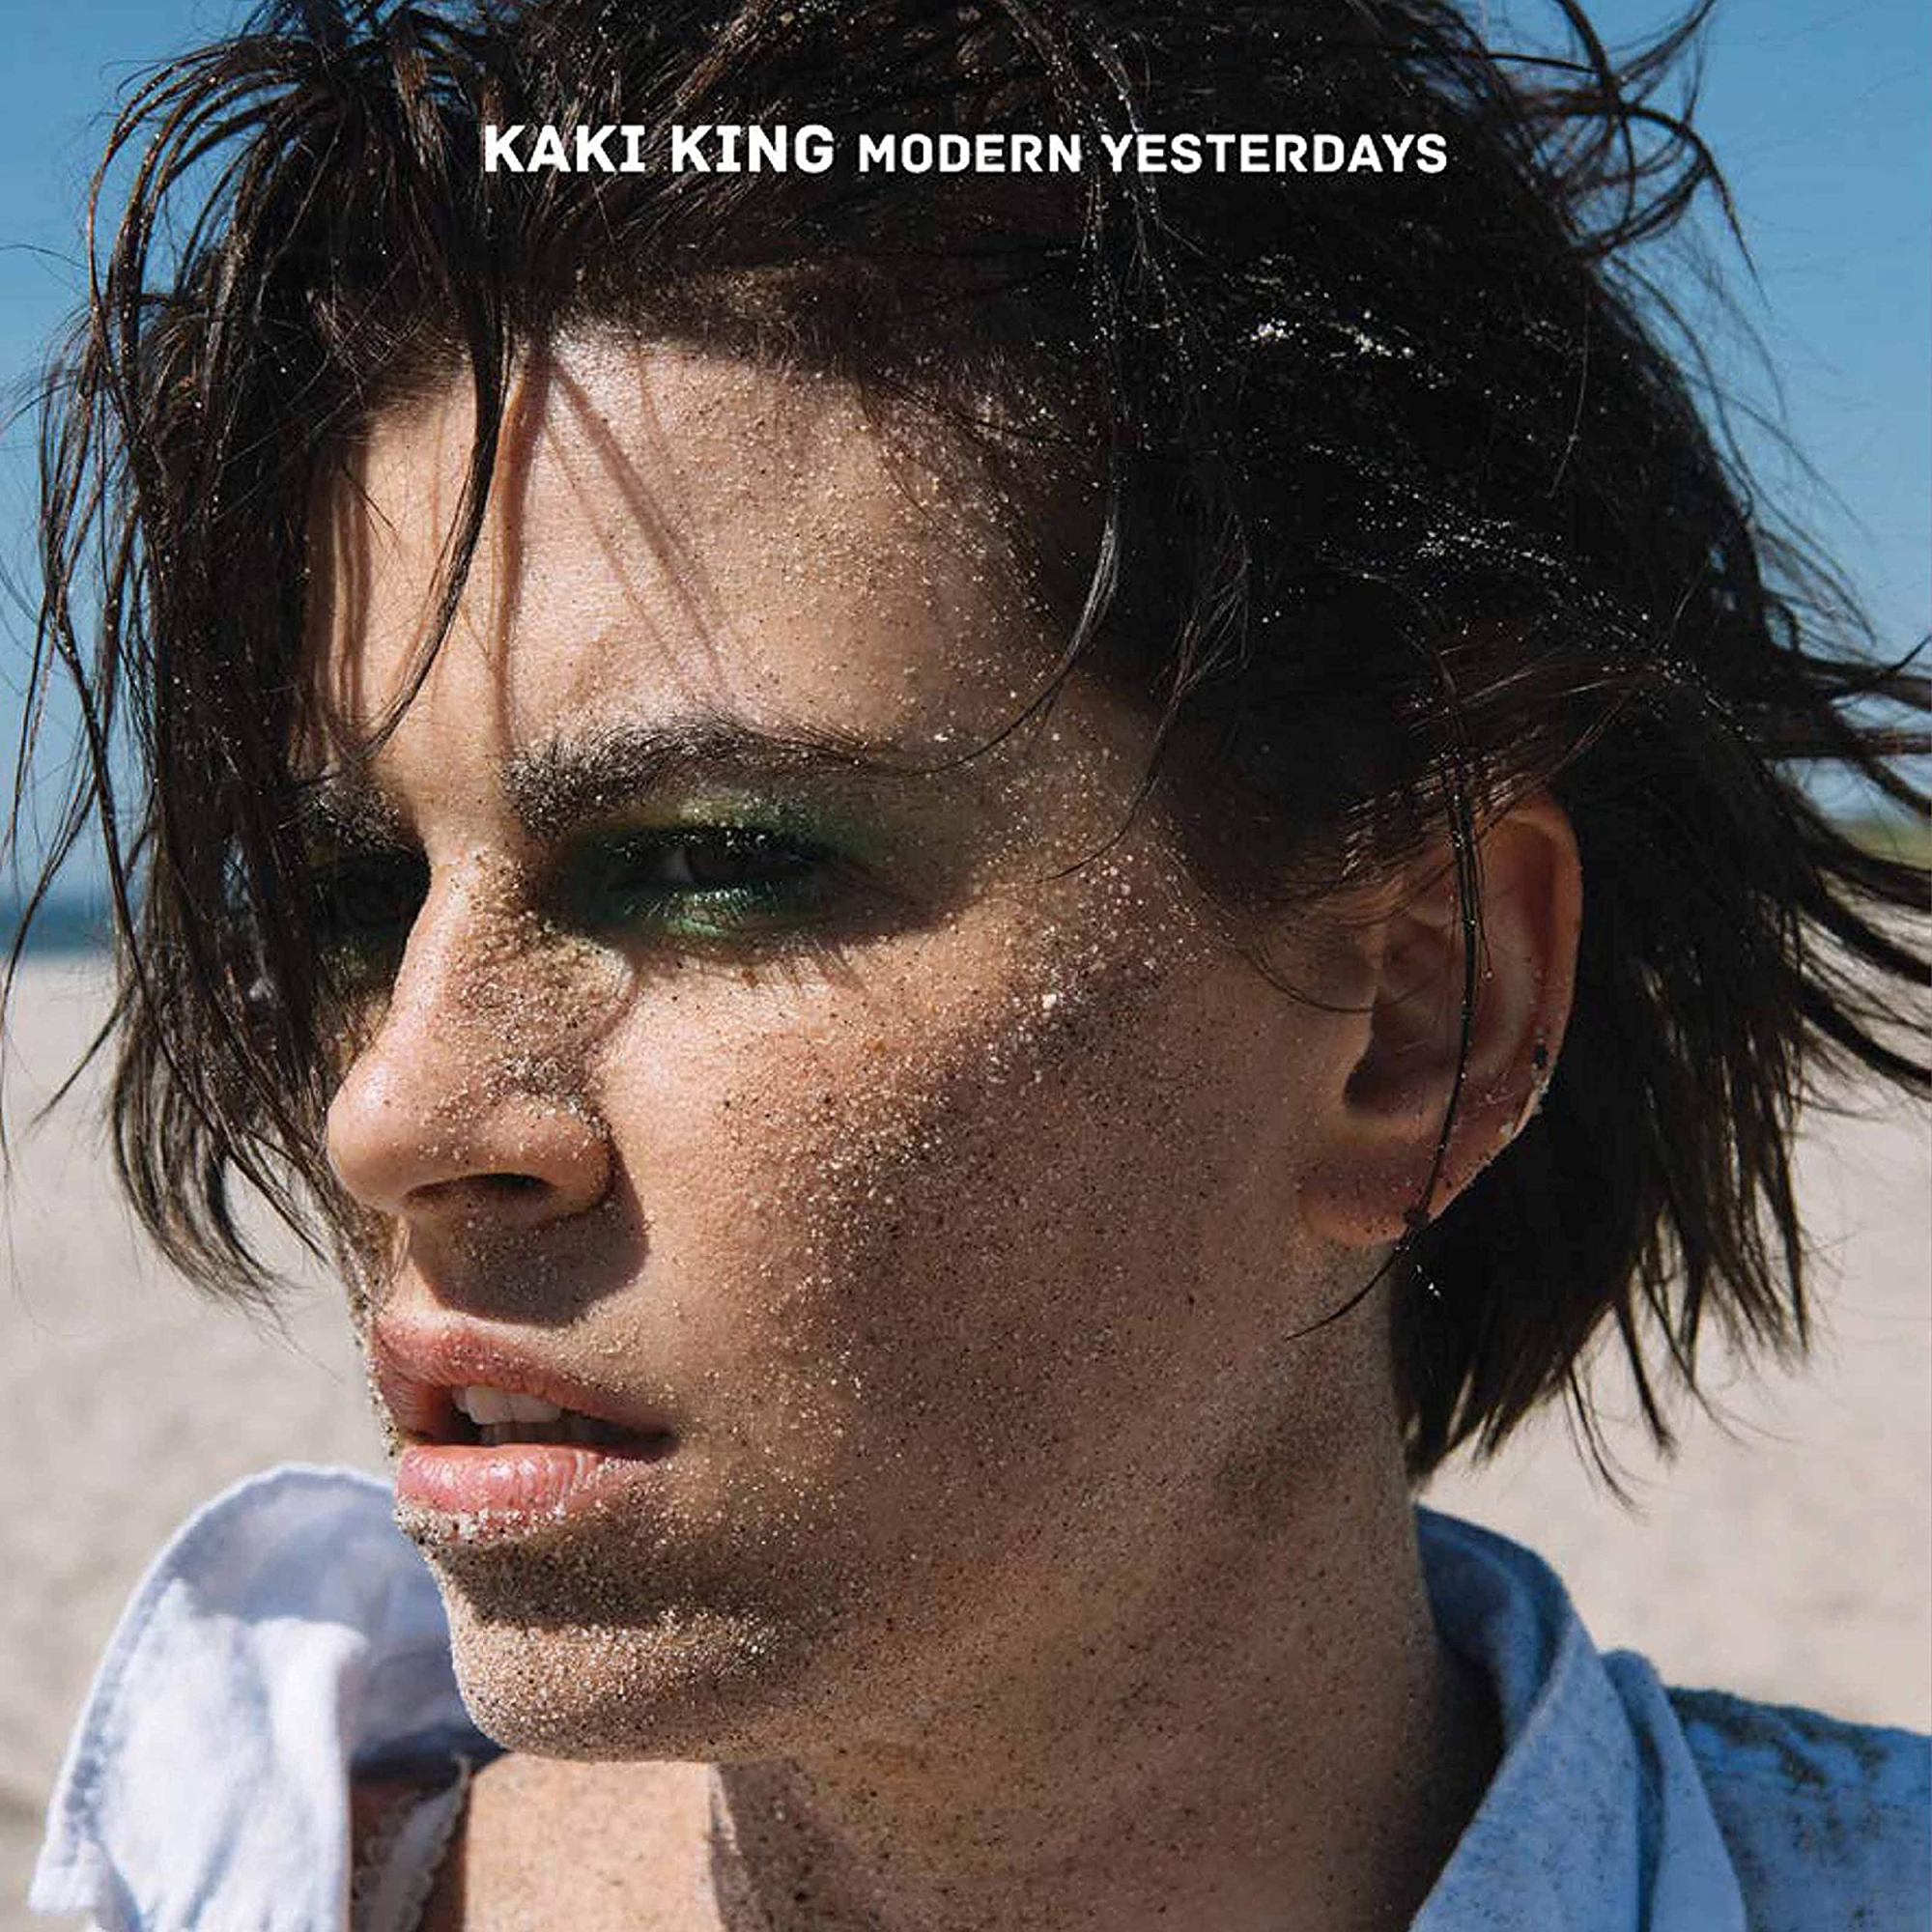 Vinile Kaki King - Modern Yesterdays NUOVO SIGILLATO, EDIZIONE DEL 20/11/2020 SUBITO DISPONIBILE